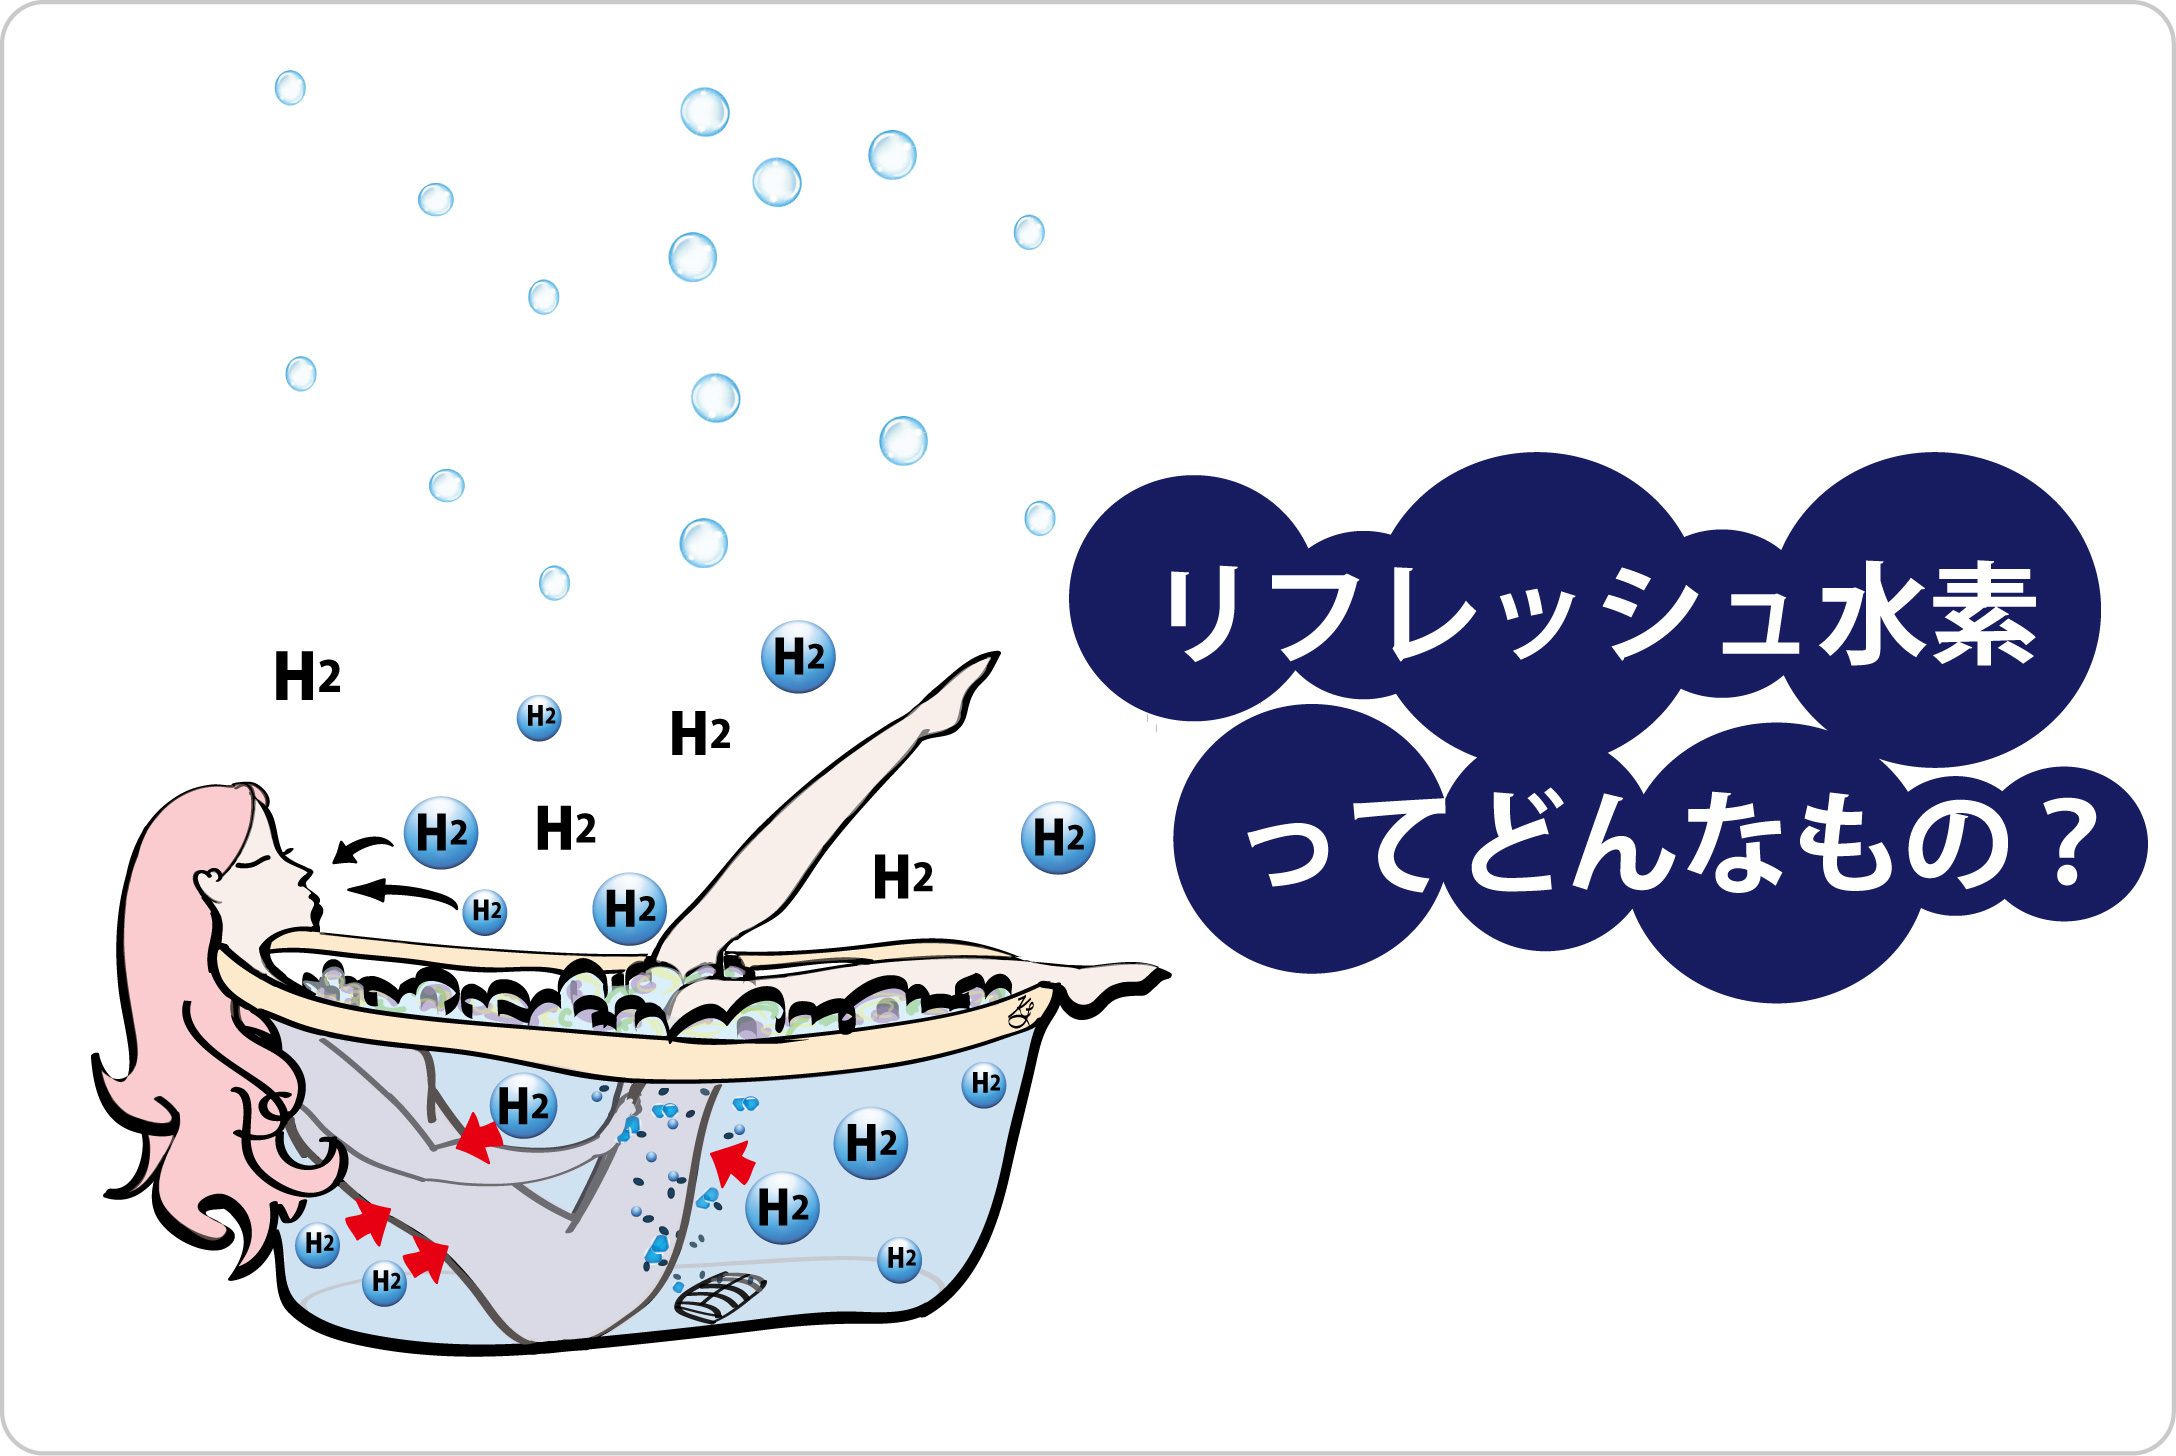 リフレッシュ水素, 水素風呂